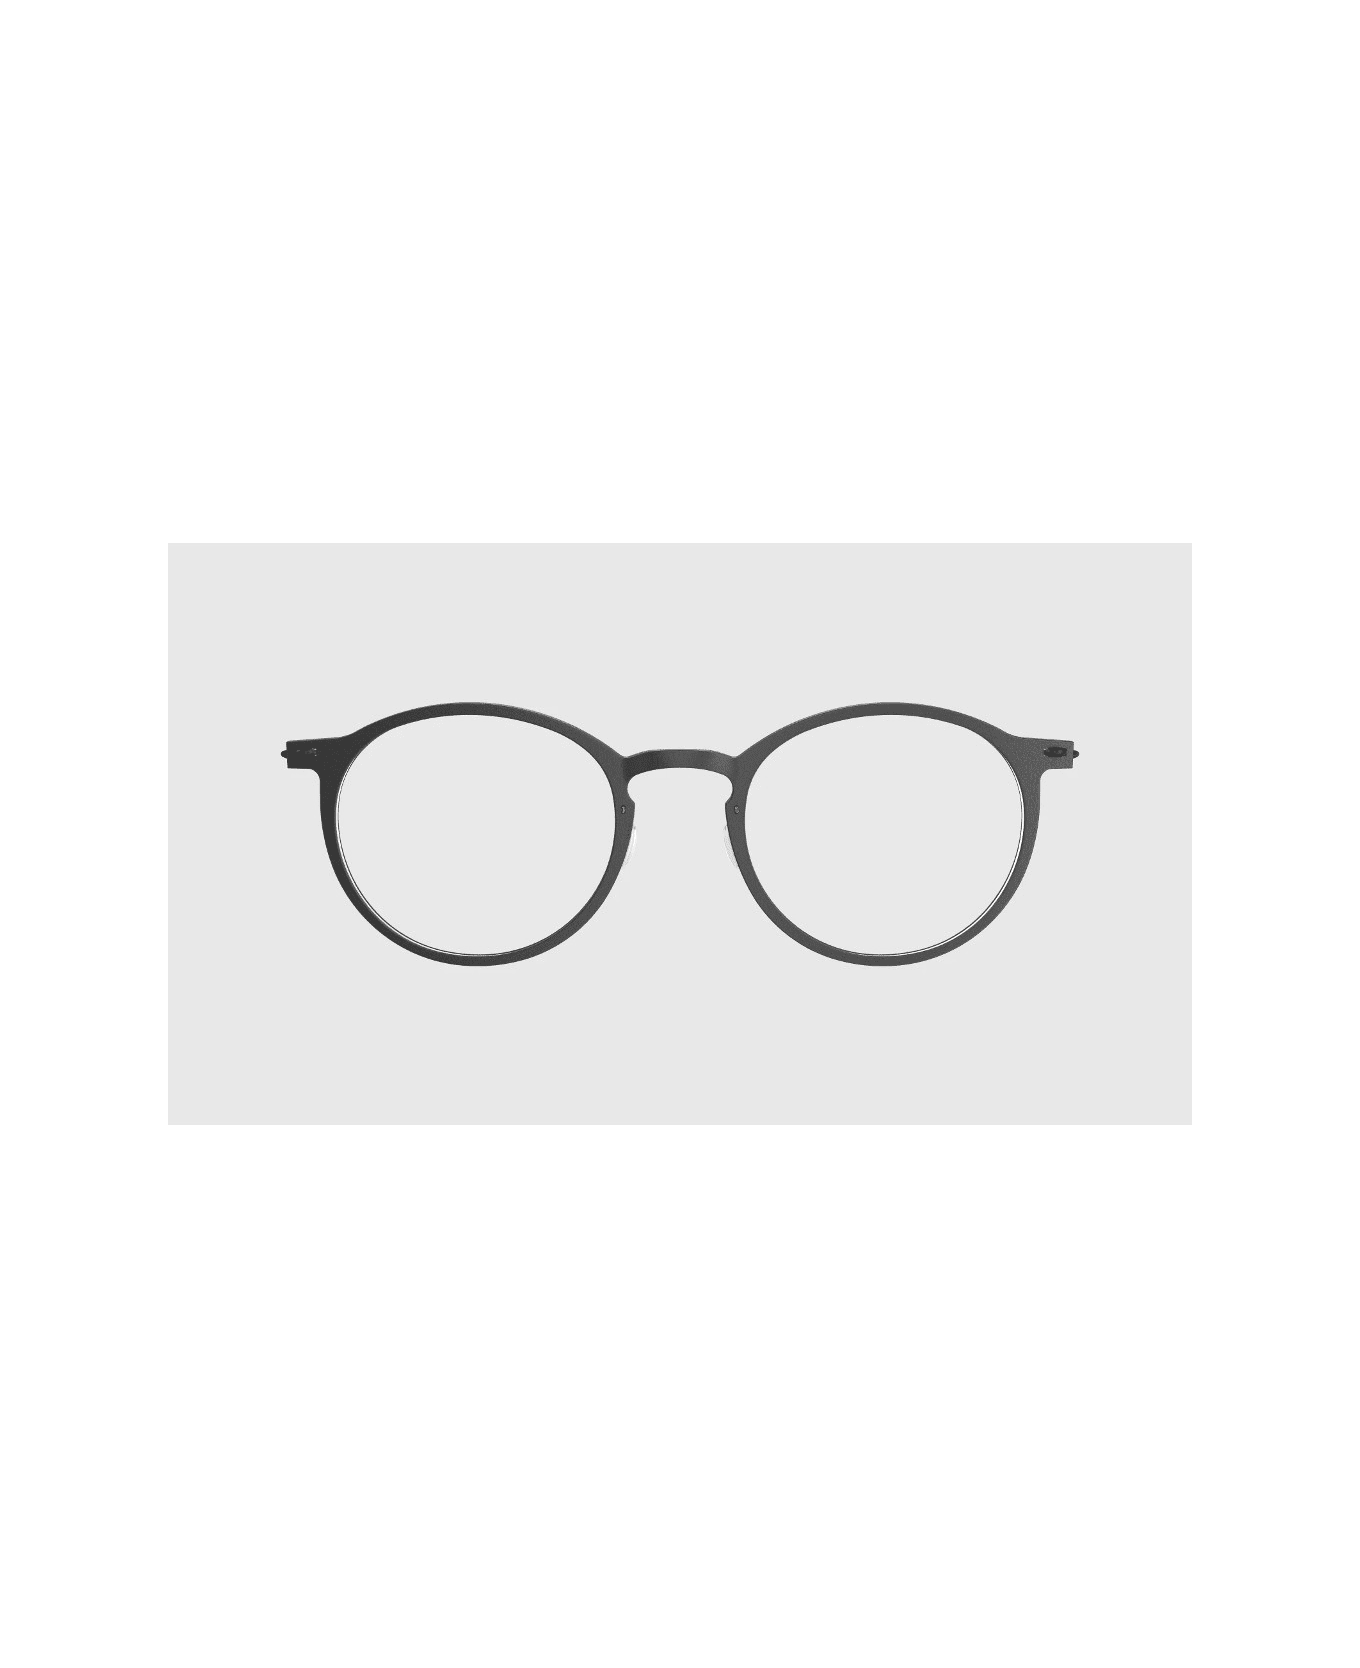 LINDBERG Now 6541 D16 Glasses